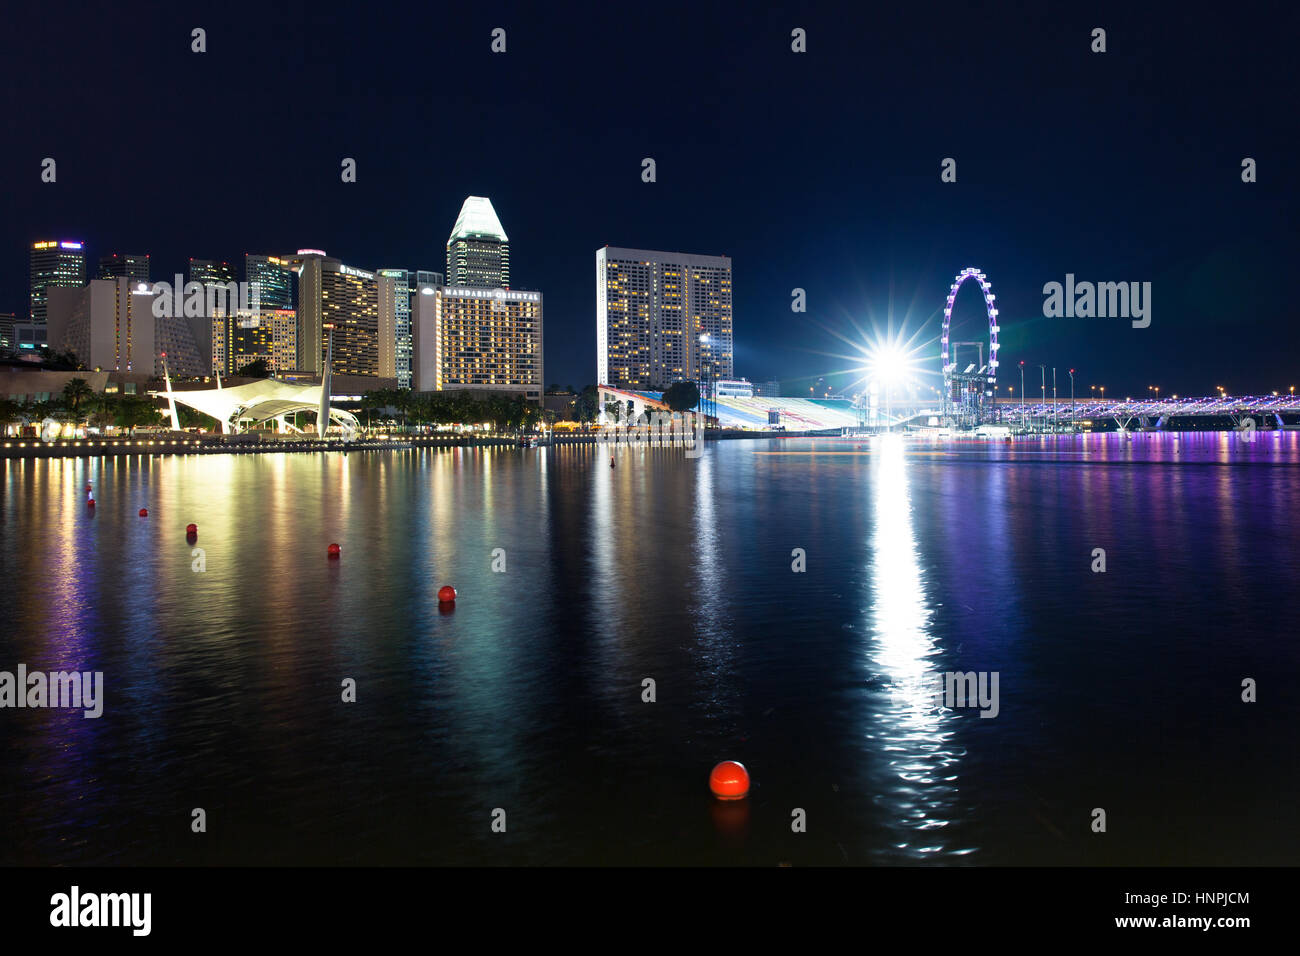 Lo skyline di Singapore, Singapore Flyer e Marina nelle acque della baia di notte al 15 luglio 2013. Foto Stock